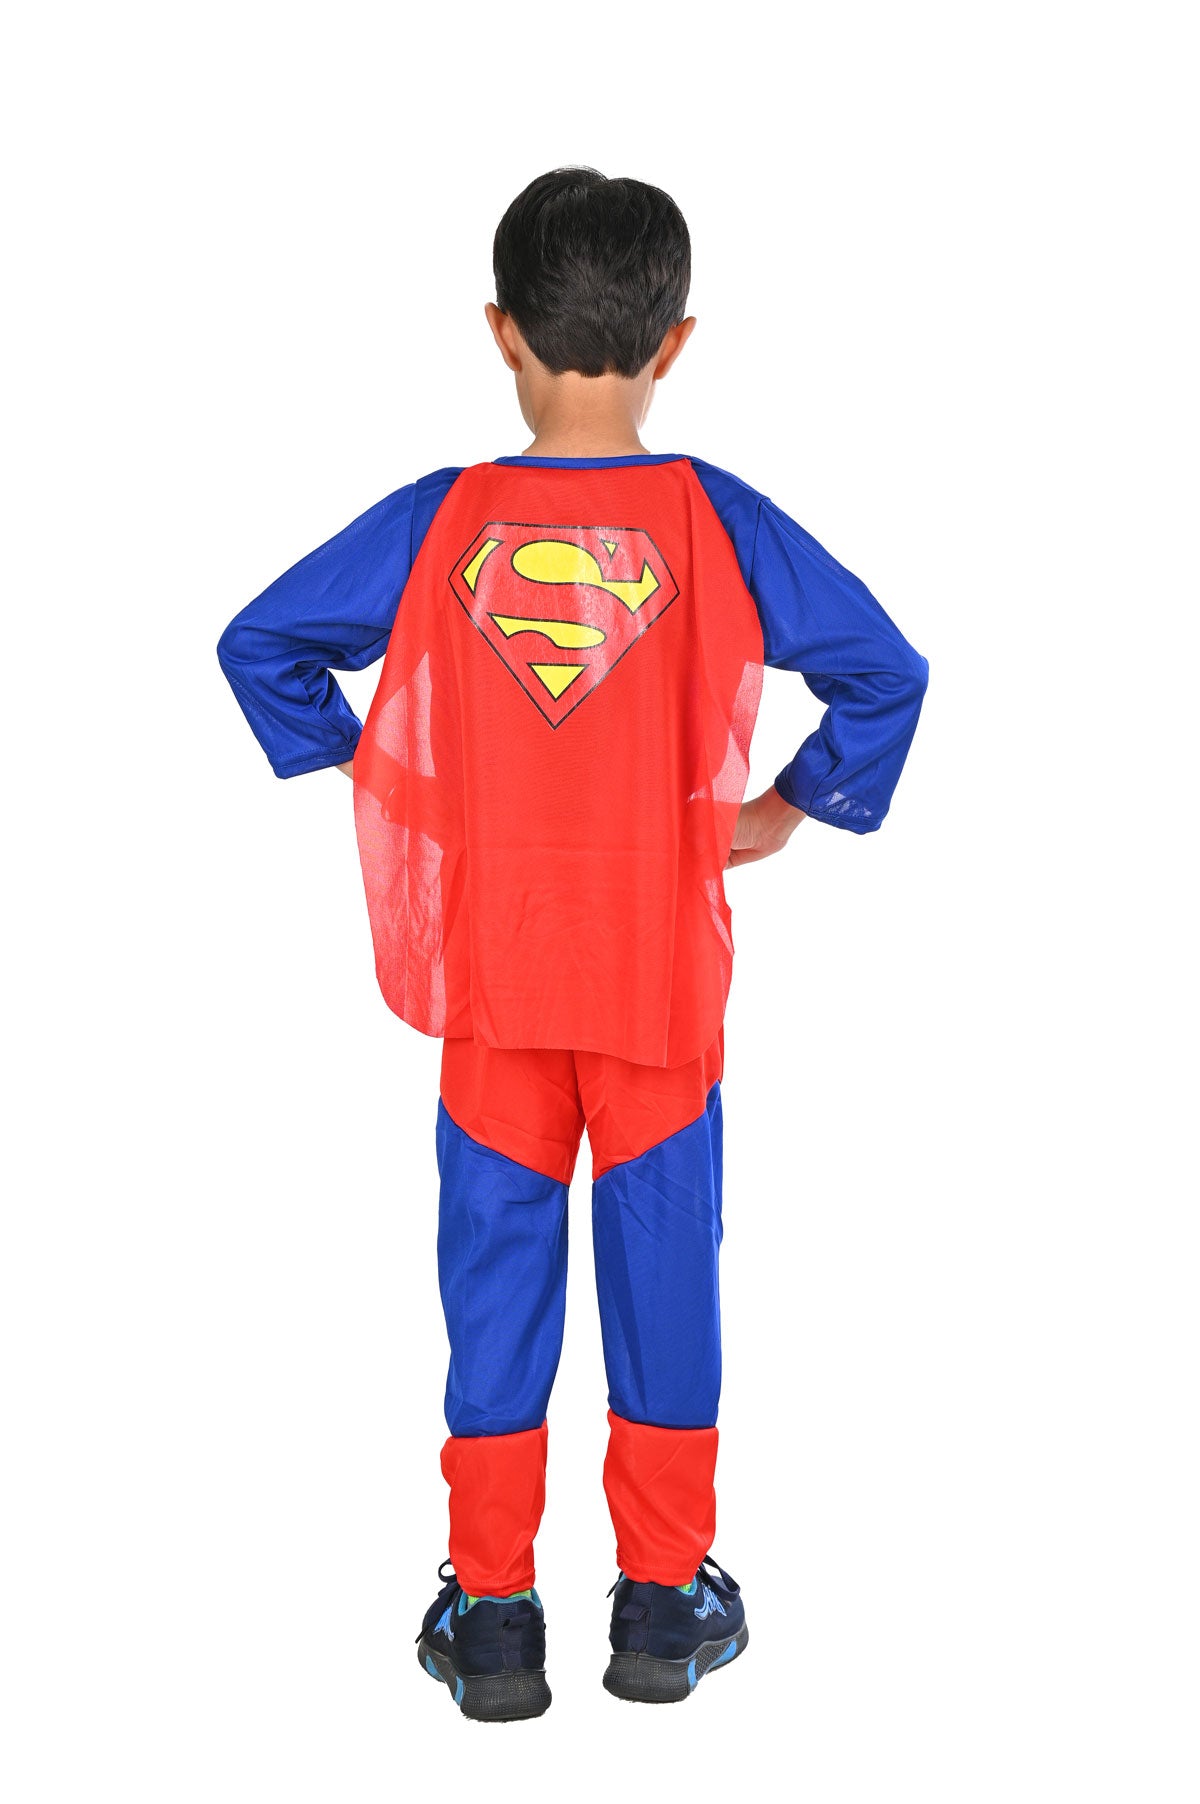 Buy Krrish Movie Superhero Kids Fancy Dress Costume Online in India